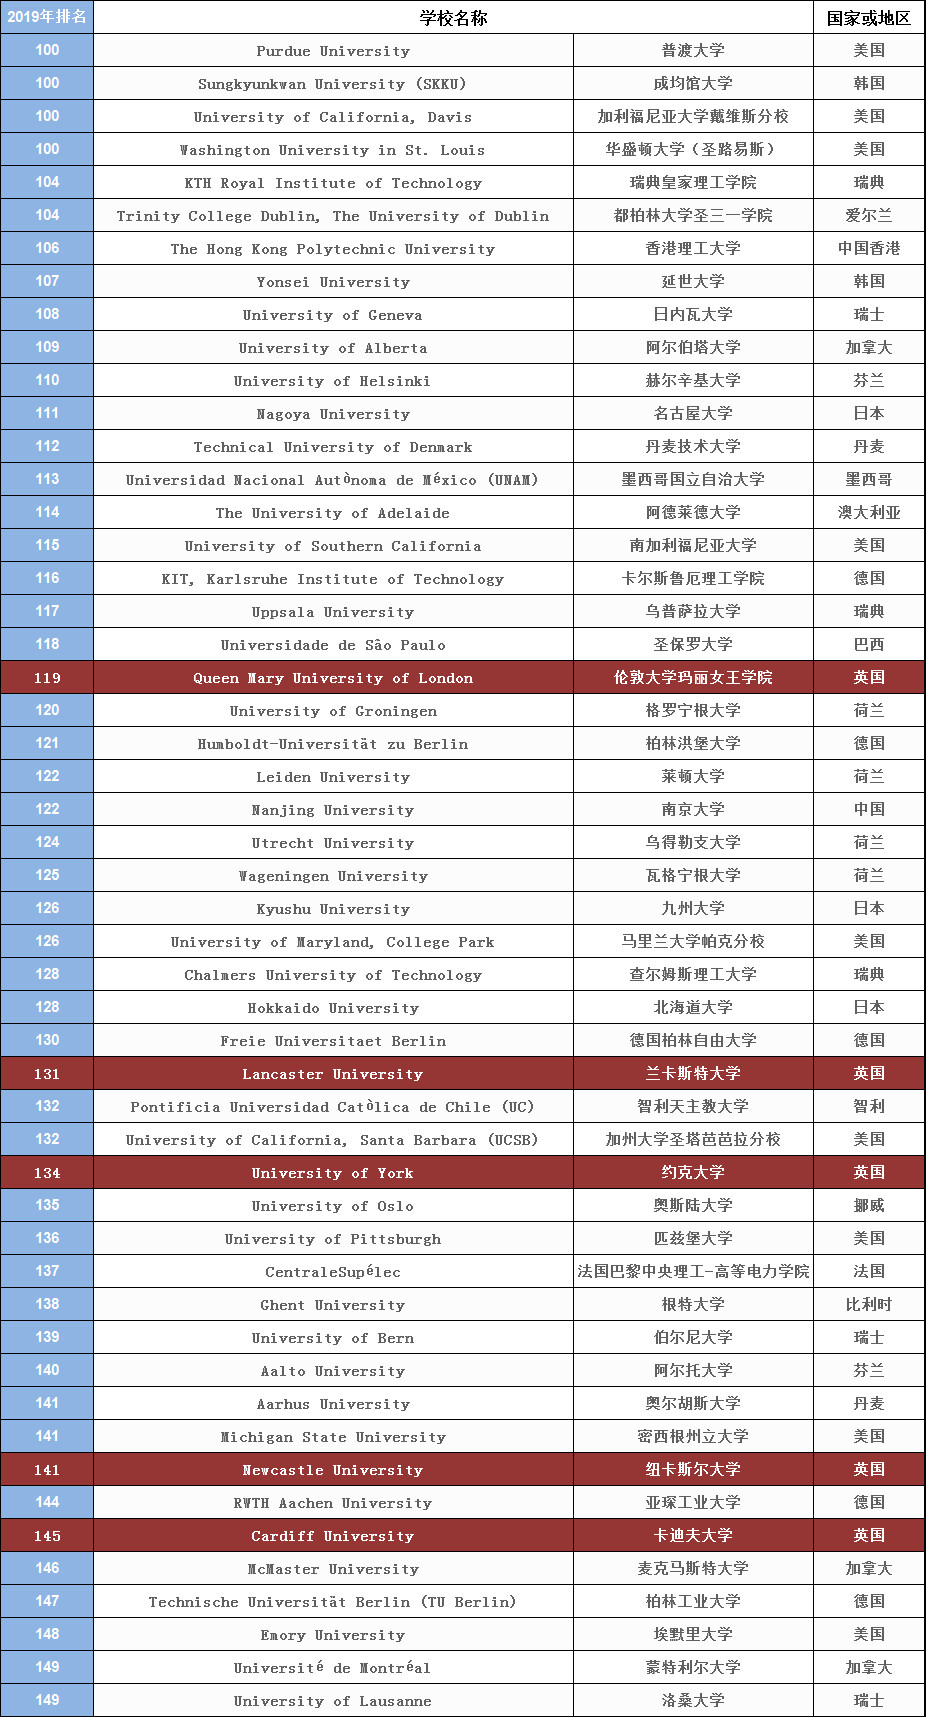 【精华】2019年最新QS世界大学排名